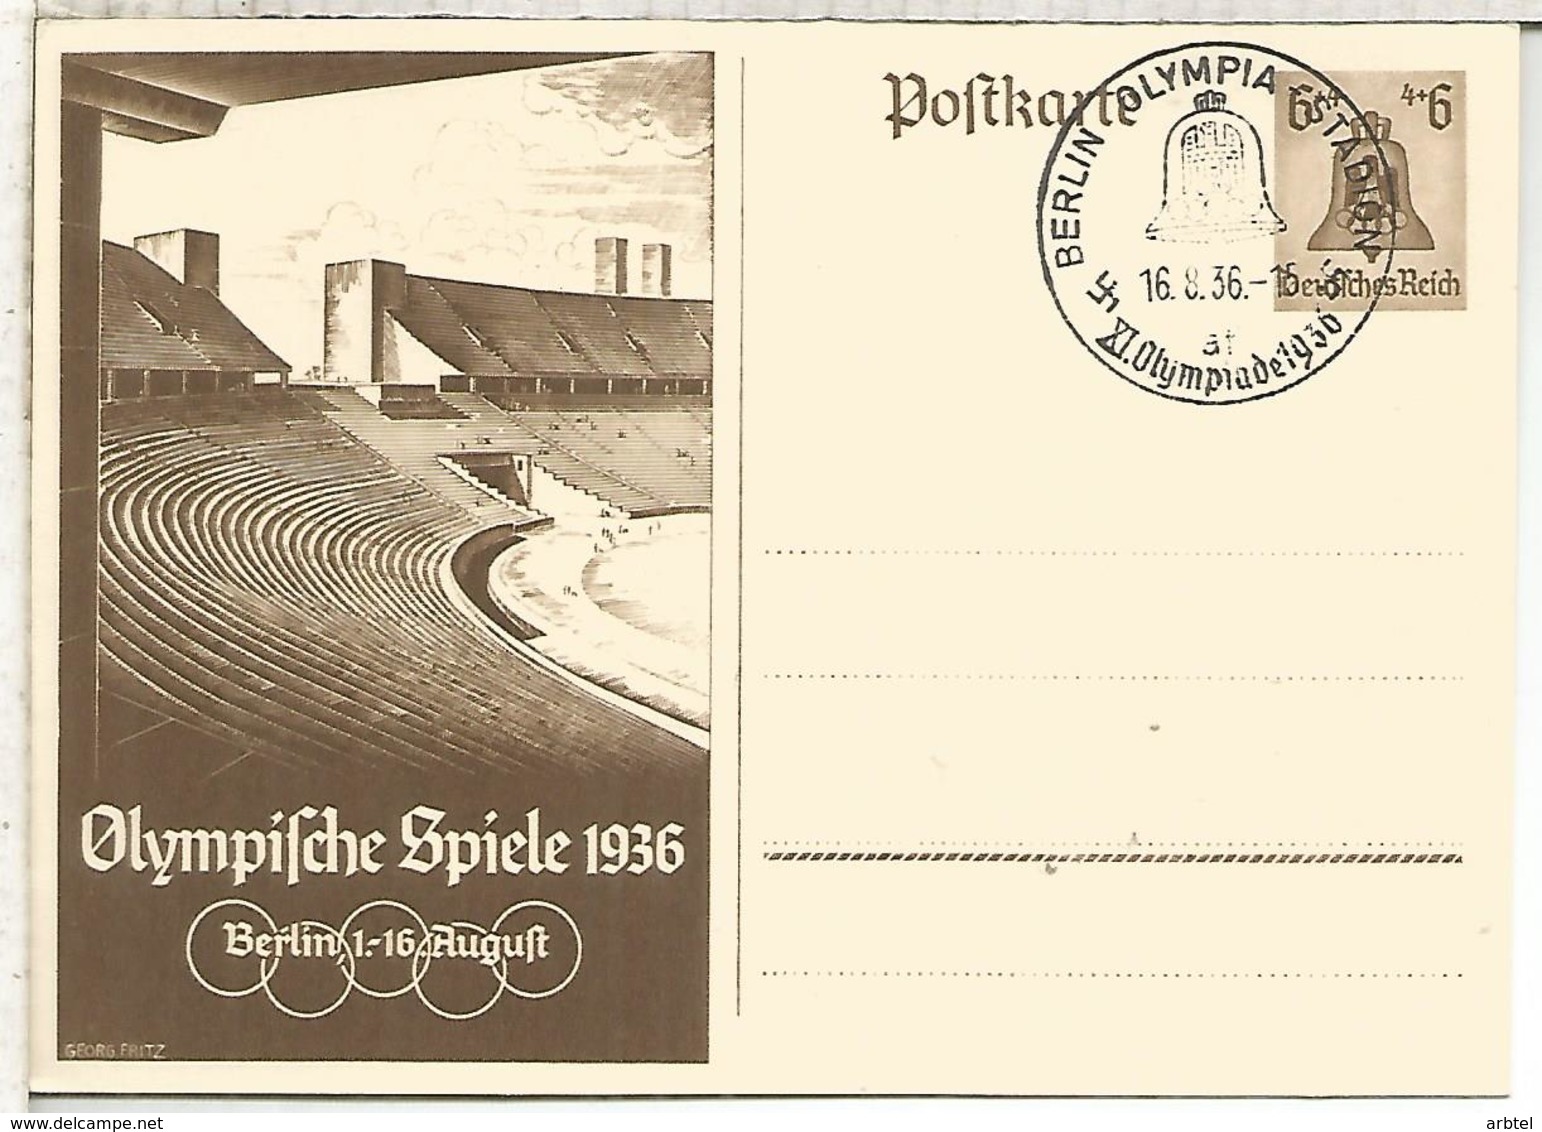 ALEMANIA REICH ENTERO POSTAL JUEGOS OLIMPICOS DE BERLIN 1936 MAT OLYMPIA STADION - Sommer 1936: Berlin